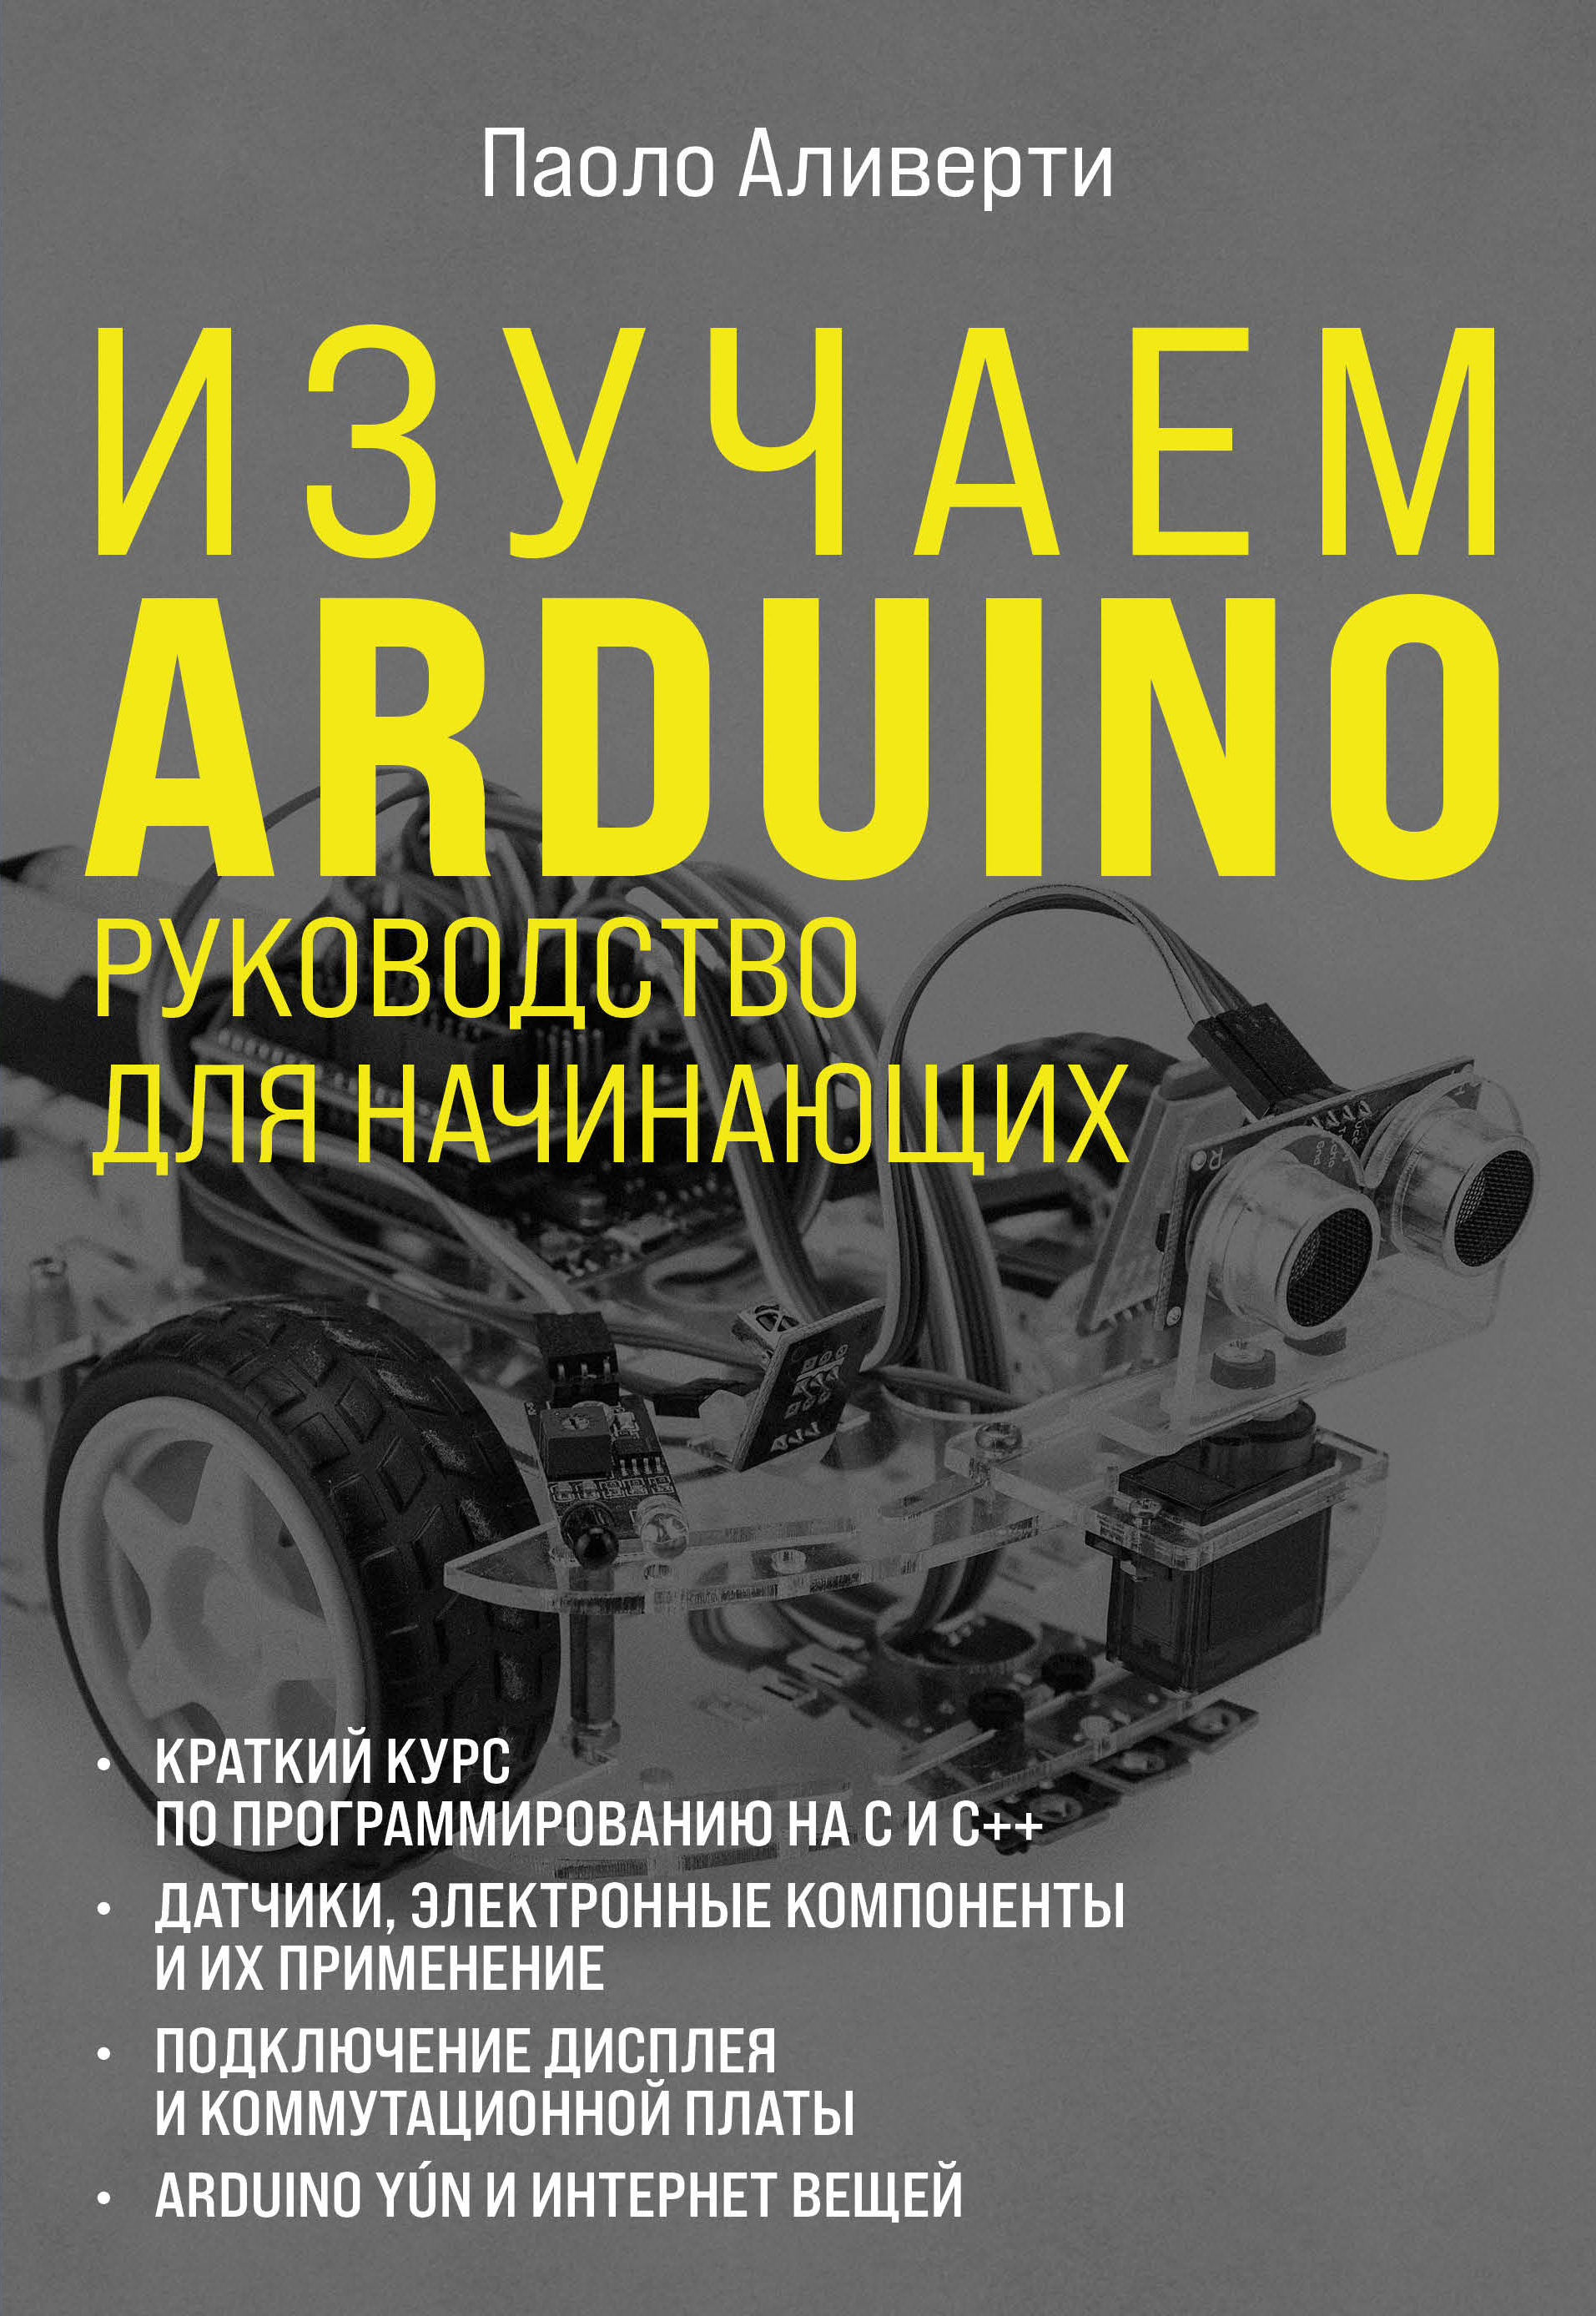 Книга Электроника для начинающих Изучаем Arduino. Руководство для начинающих созданная Паоло Аливерти, О. Ермак может относится к жанру компьютерное железо, программирование, руководства, электроника. Стоимость электронной книги Изучаем Arduino. Руководство для начинающих с идентификатором 66361152 составляет 919.00 руб.